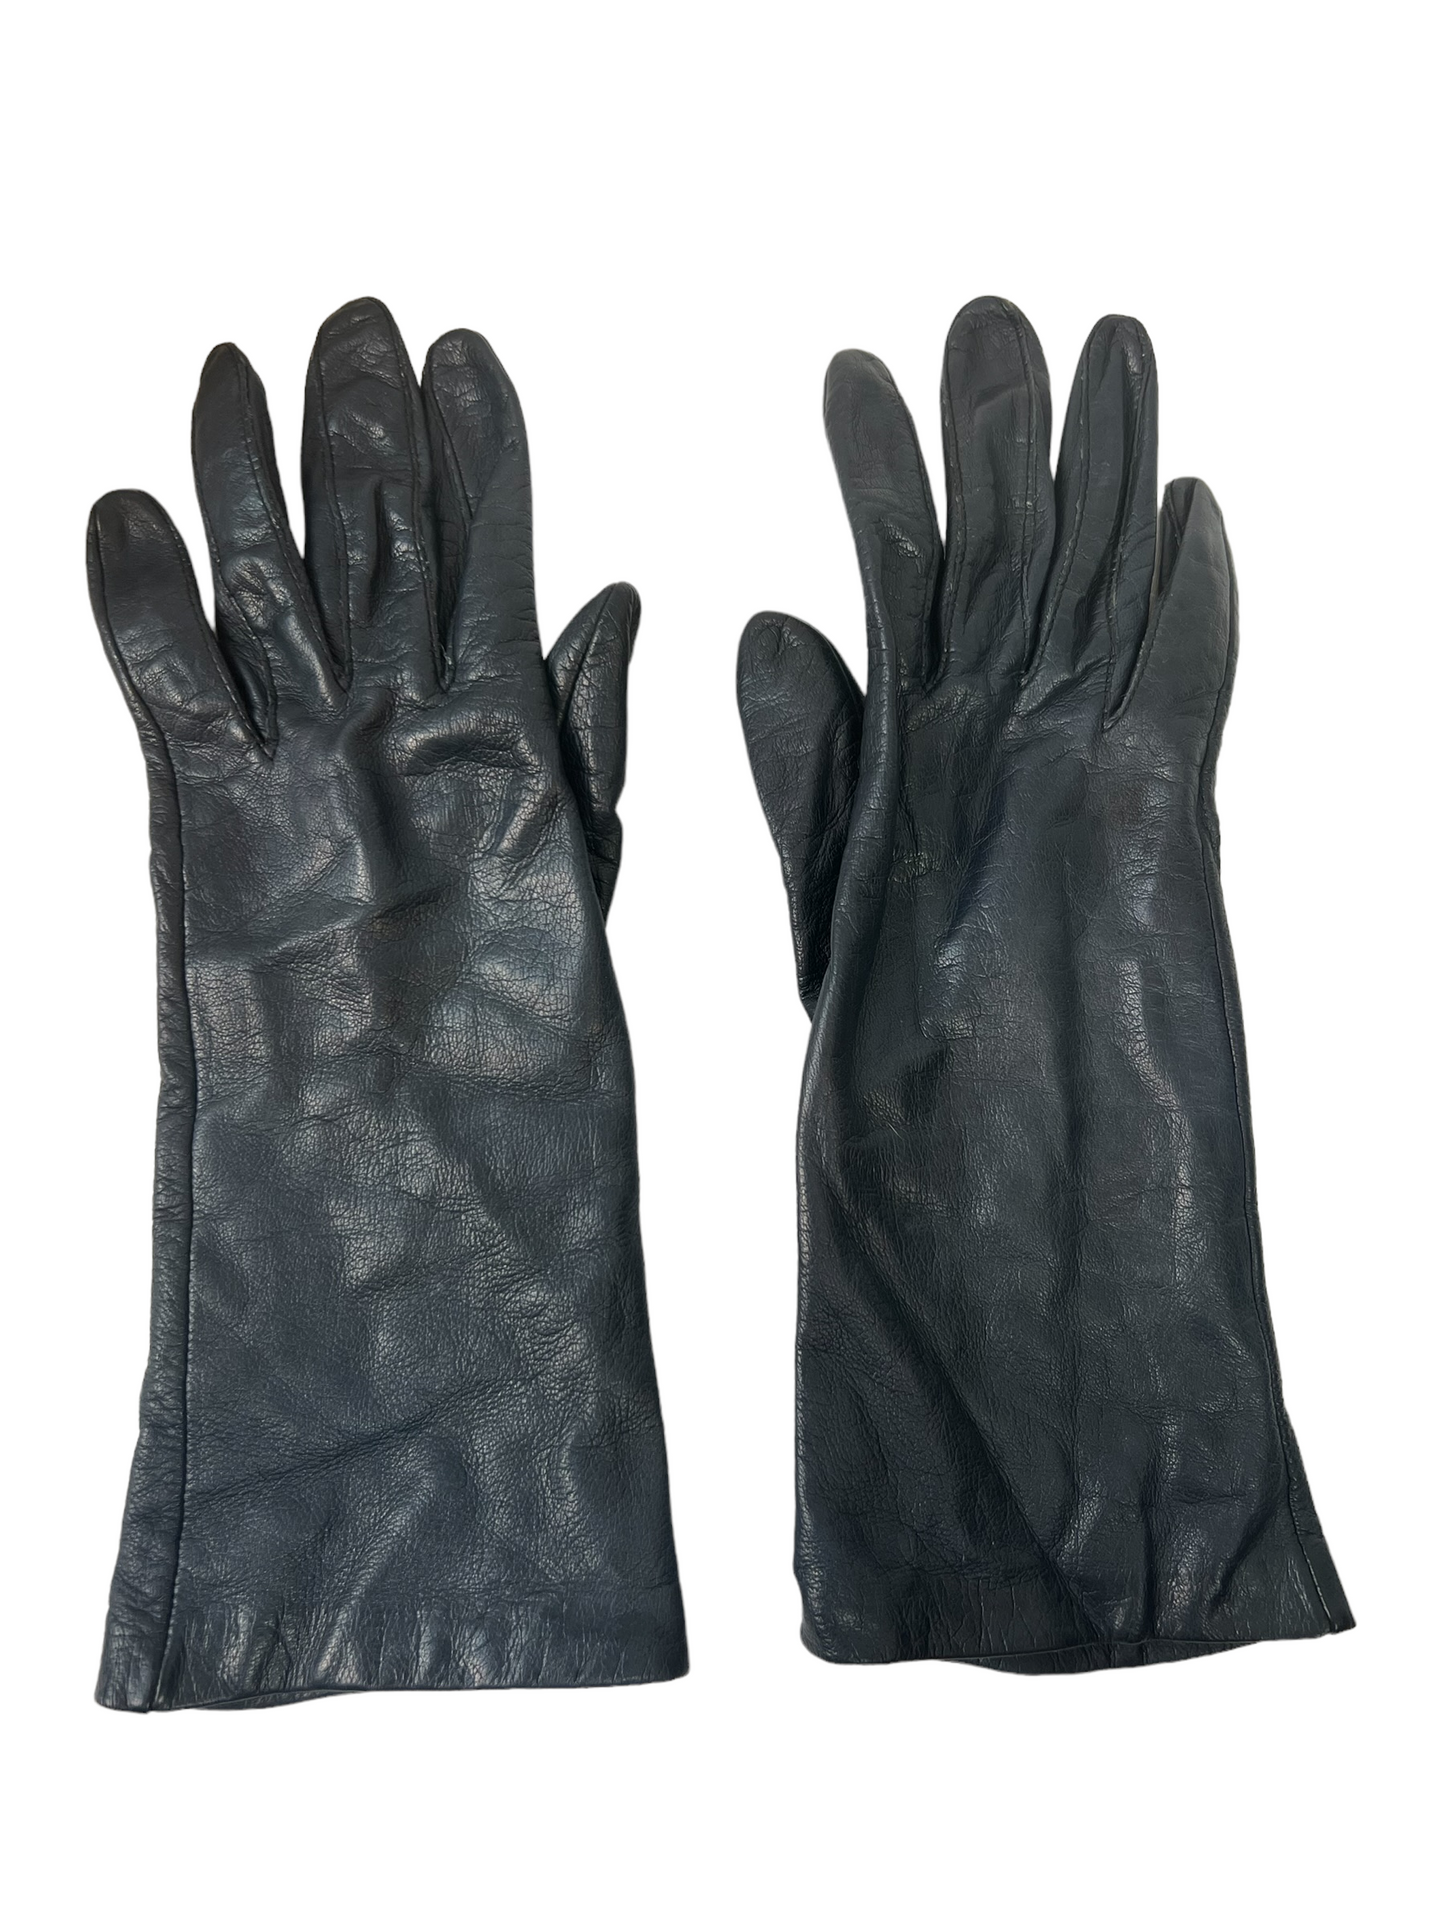 Vintage Navy Blue Driving Gloves